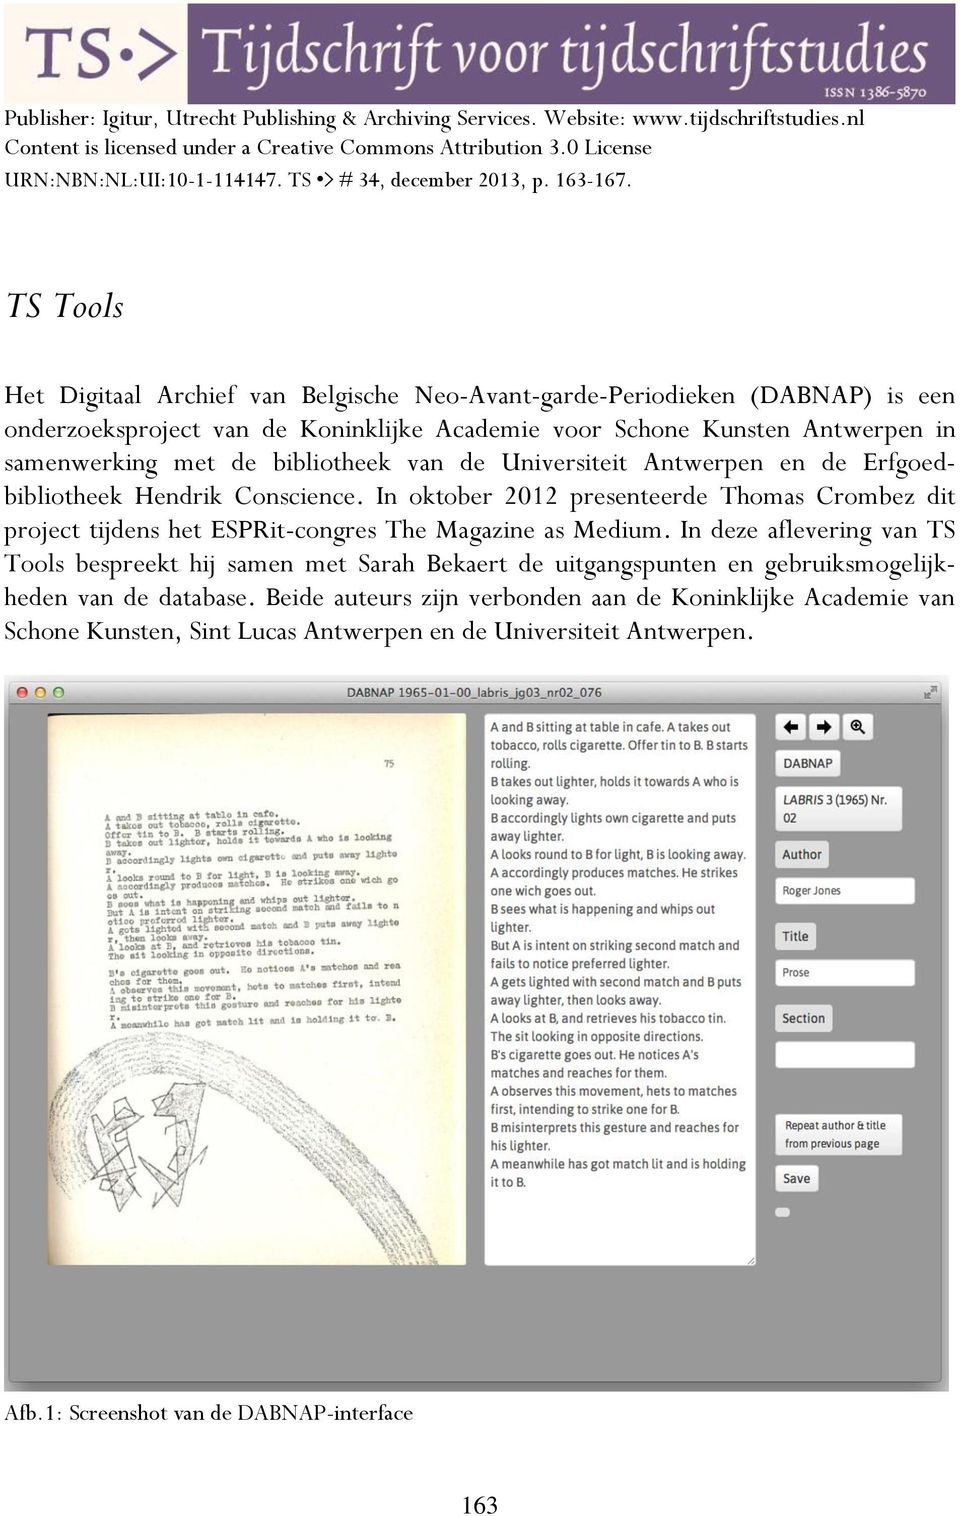 TS Tools Het Digitaal Archief van Belgische Neo-Avant-garde-Periodieken (DABNAP) is een onderzoeksproject van de Koninklijke Academie voor Schone Kunsten Antwerpen in samenwerking met de bibliotheek